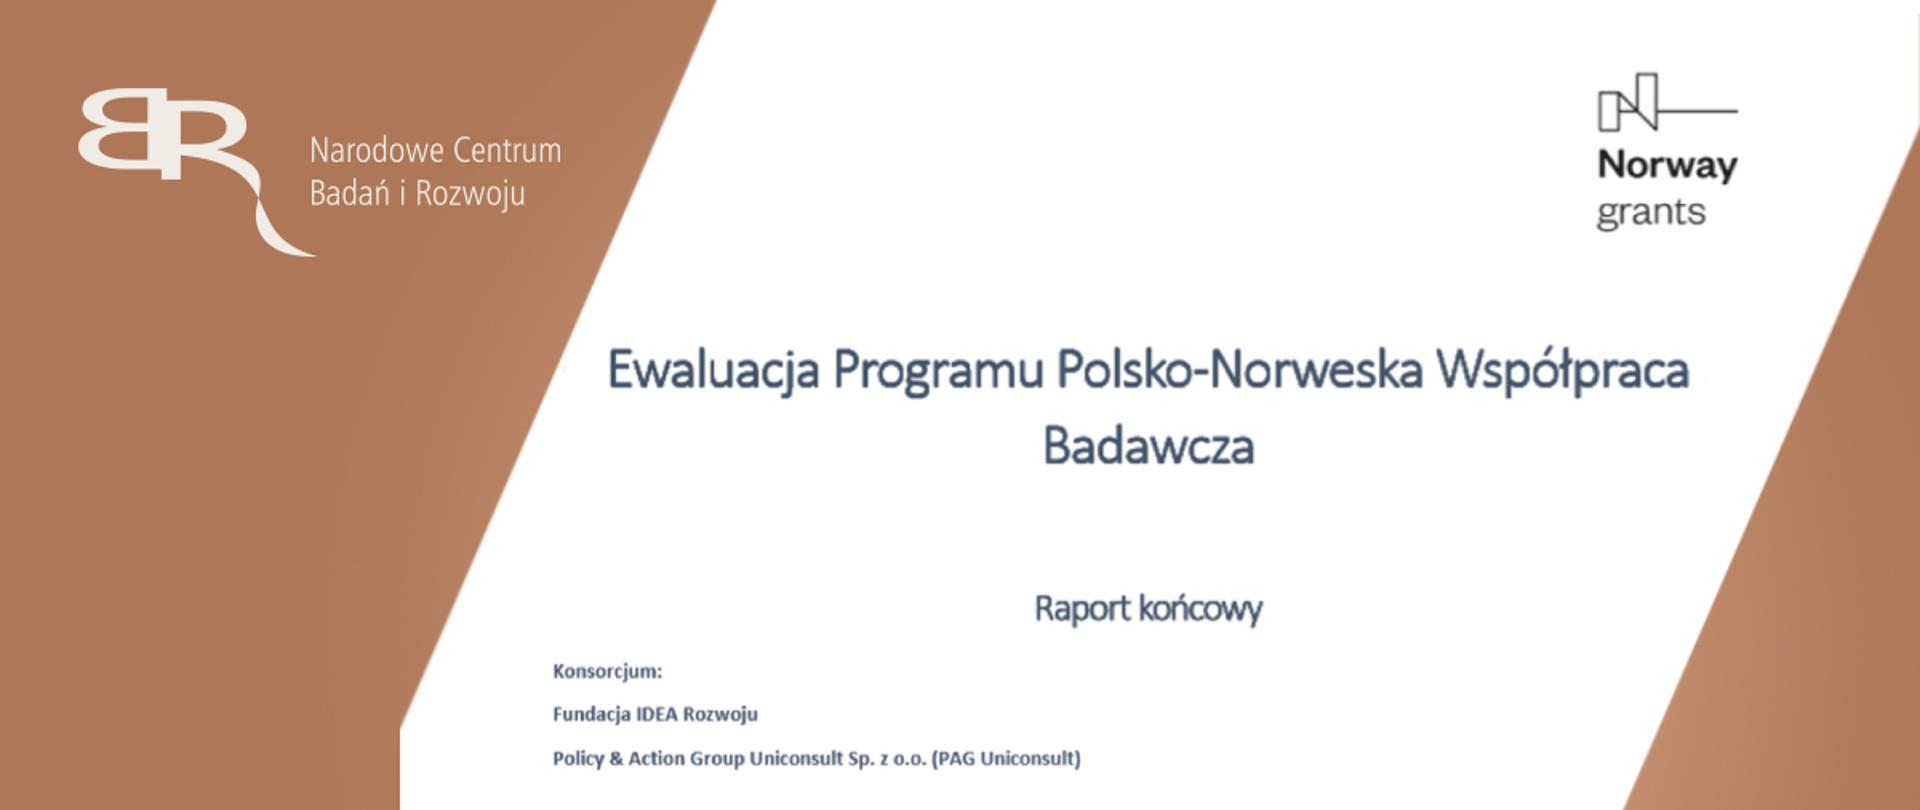 Program Polsko-Norweska współpraca badawcza